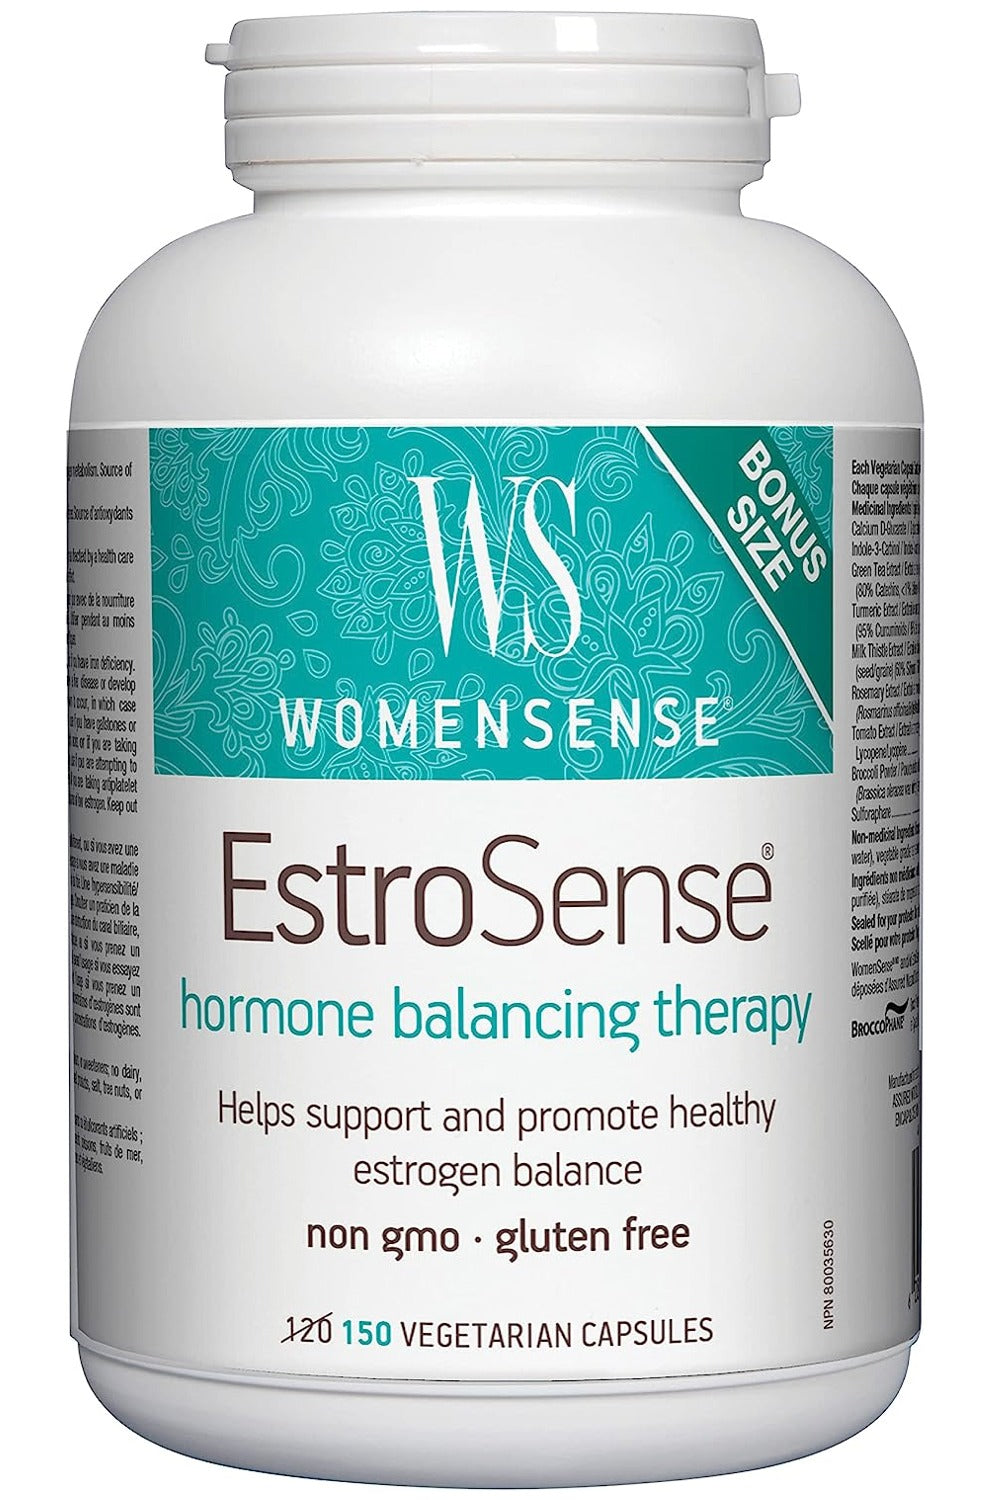 WOMENSENSE EstroSense (150 vcaps BONUS)